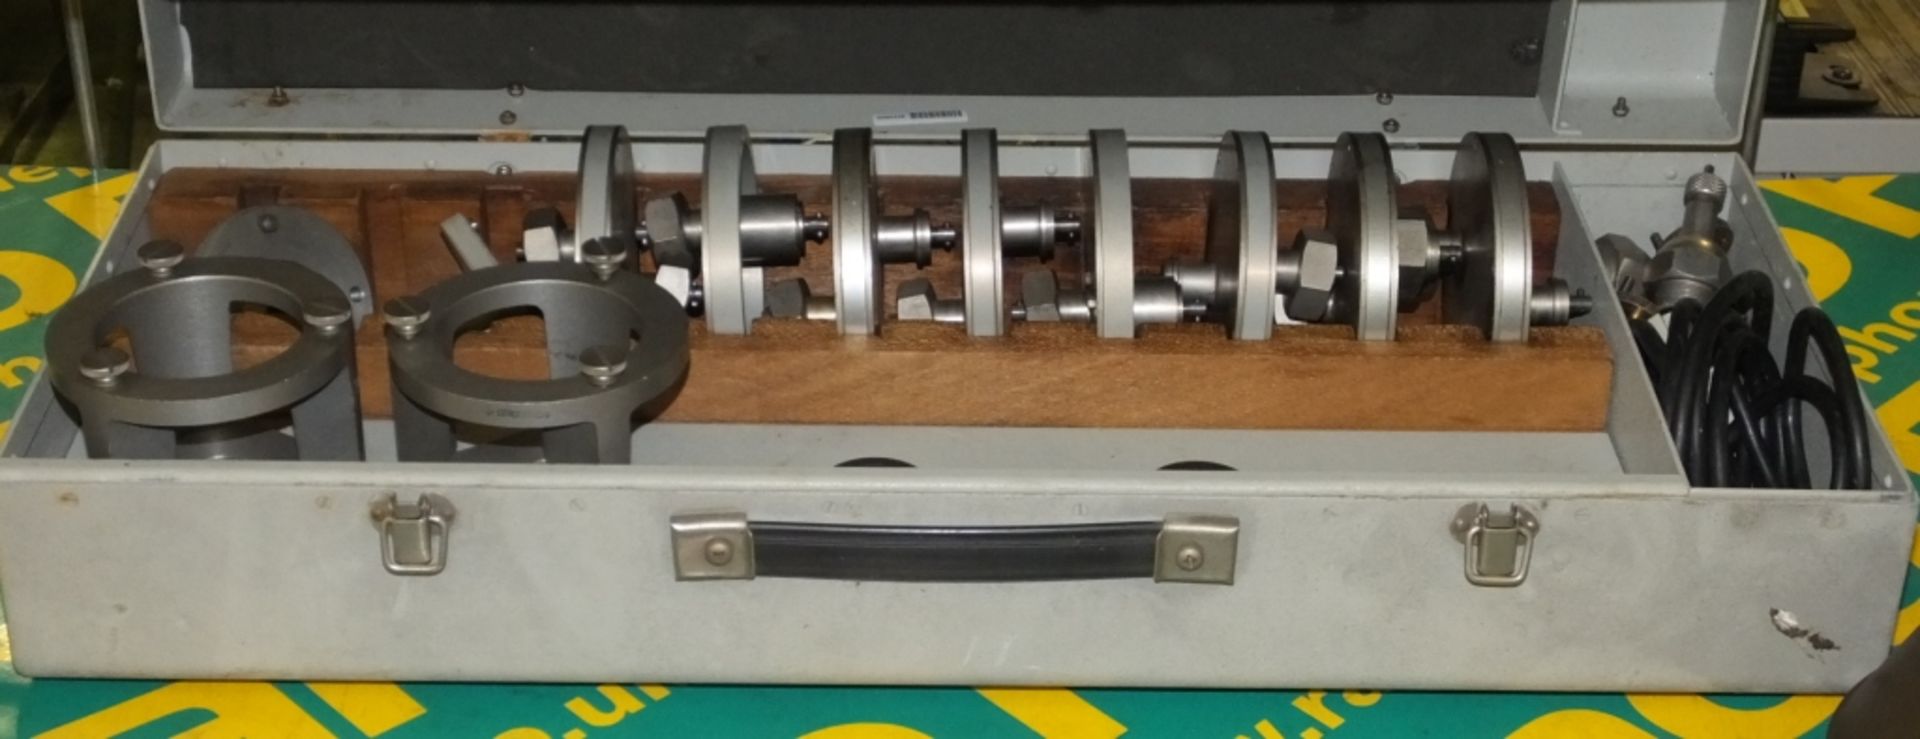 Negretti Dual Tacho Tester Accessories, Funnel - Image 2 of 2